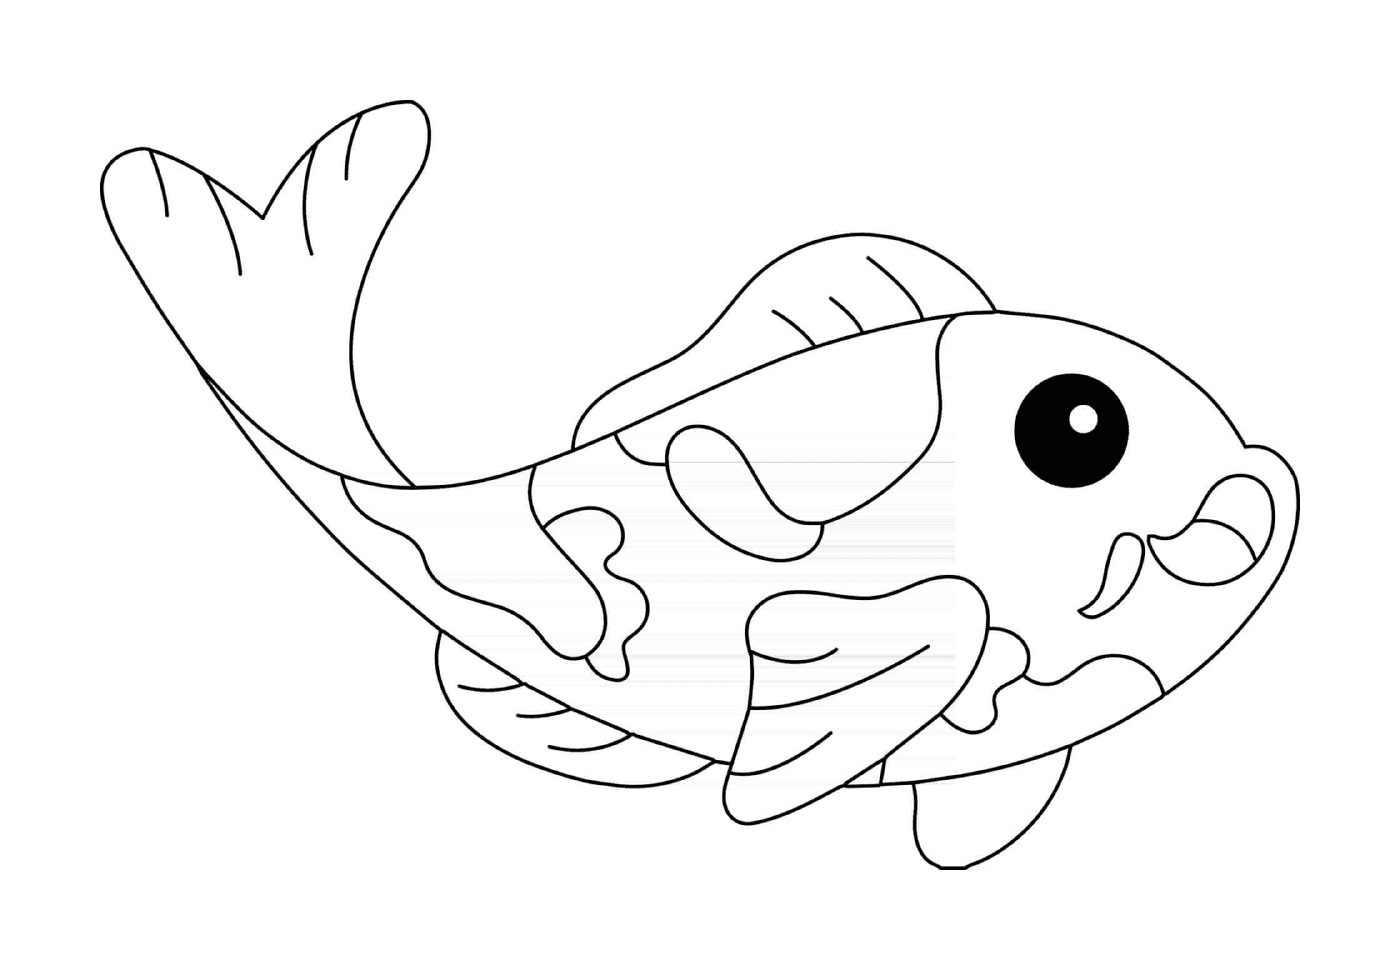  Peixe carp koi 